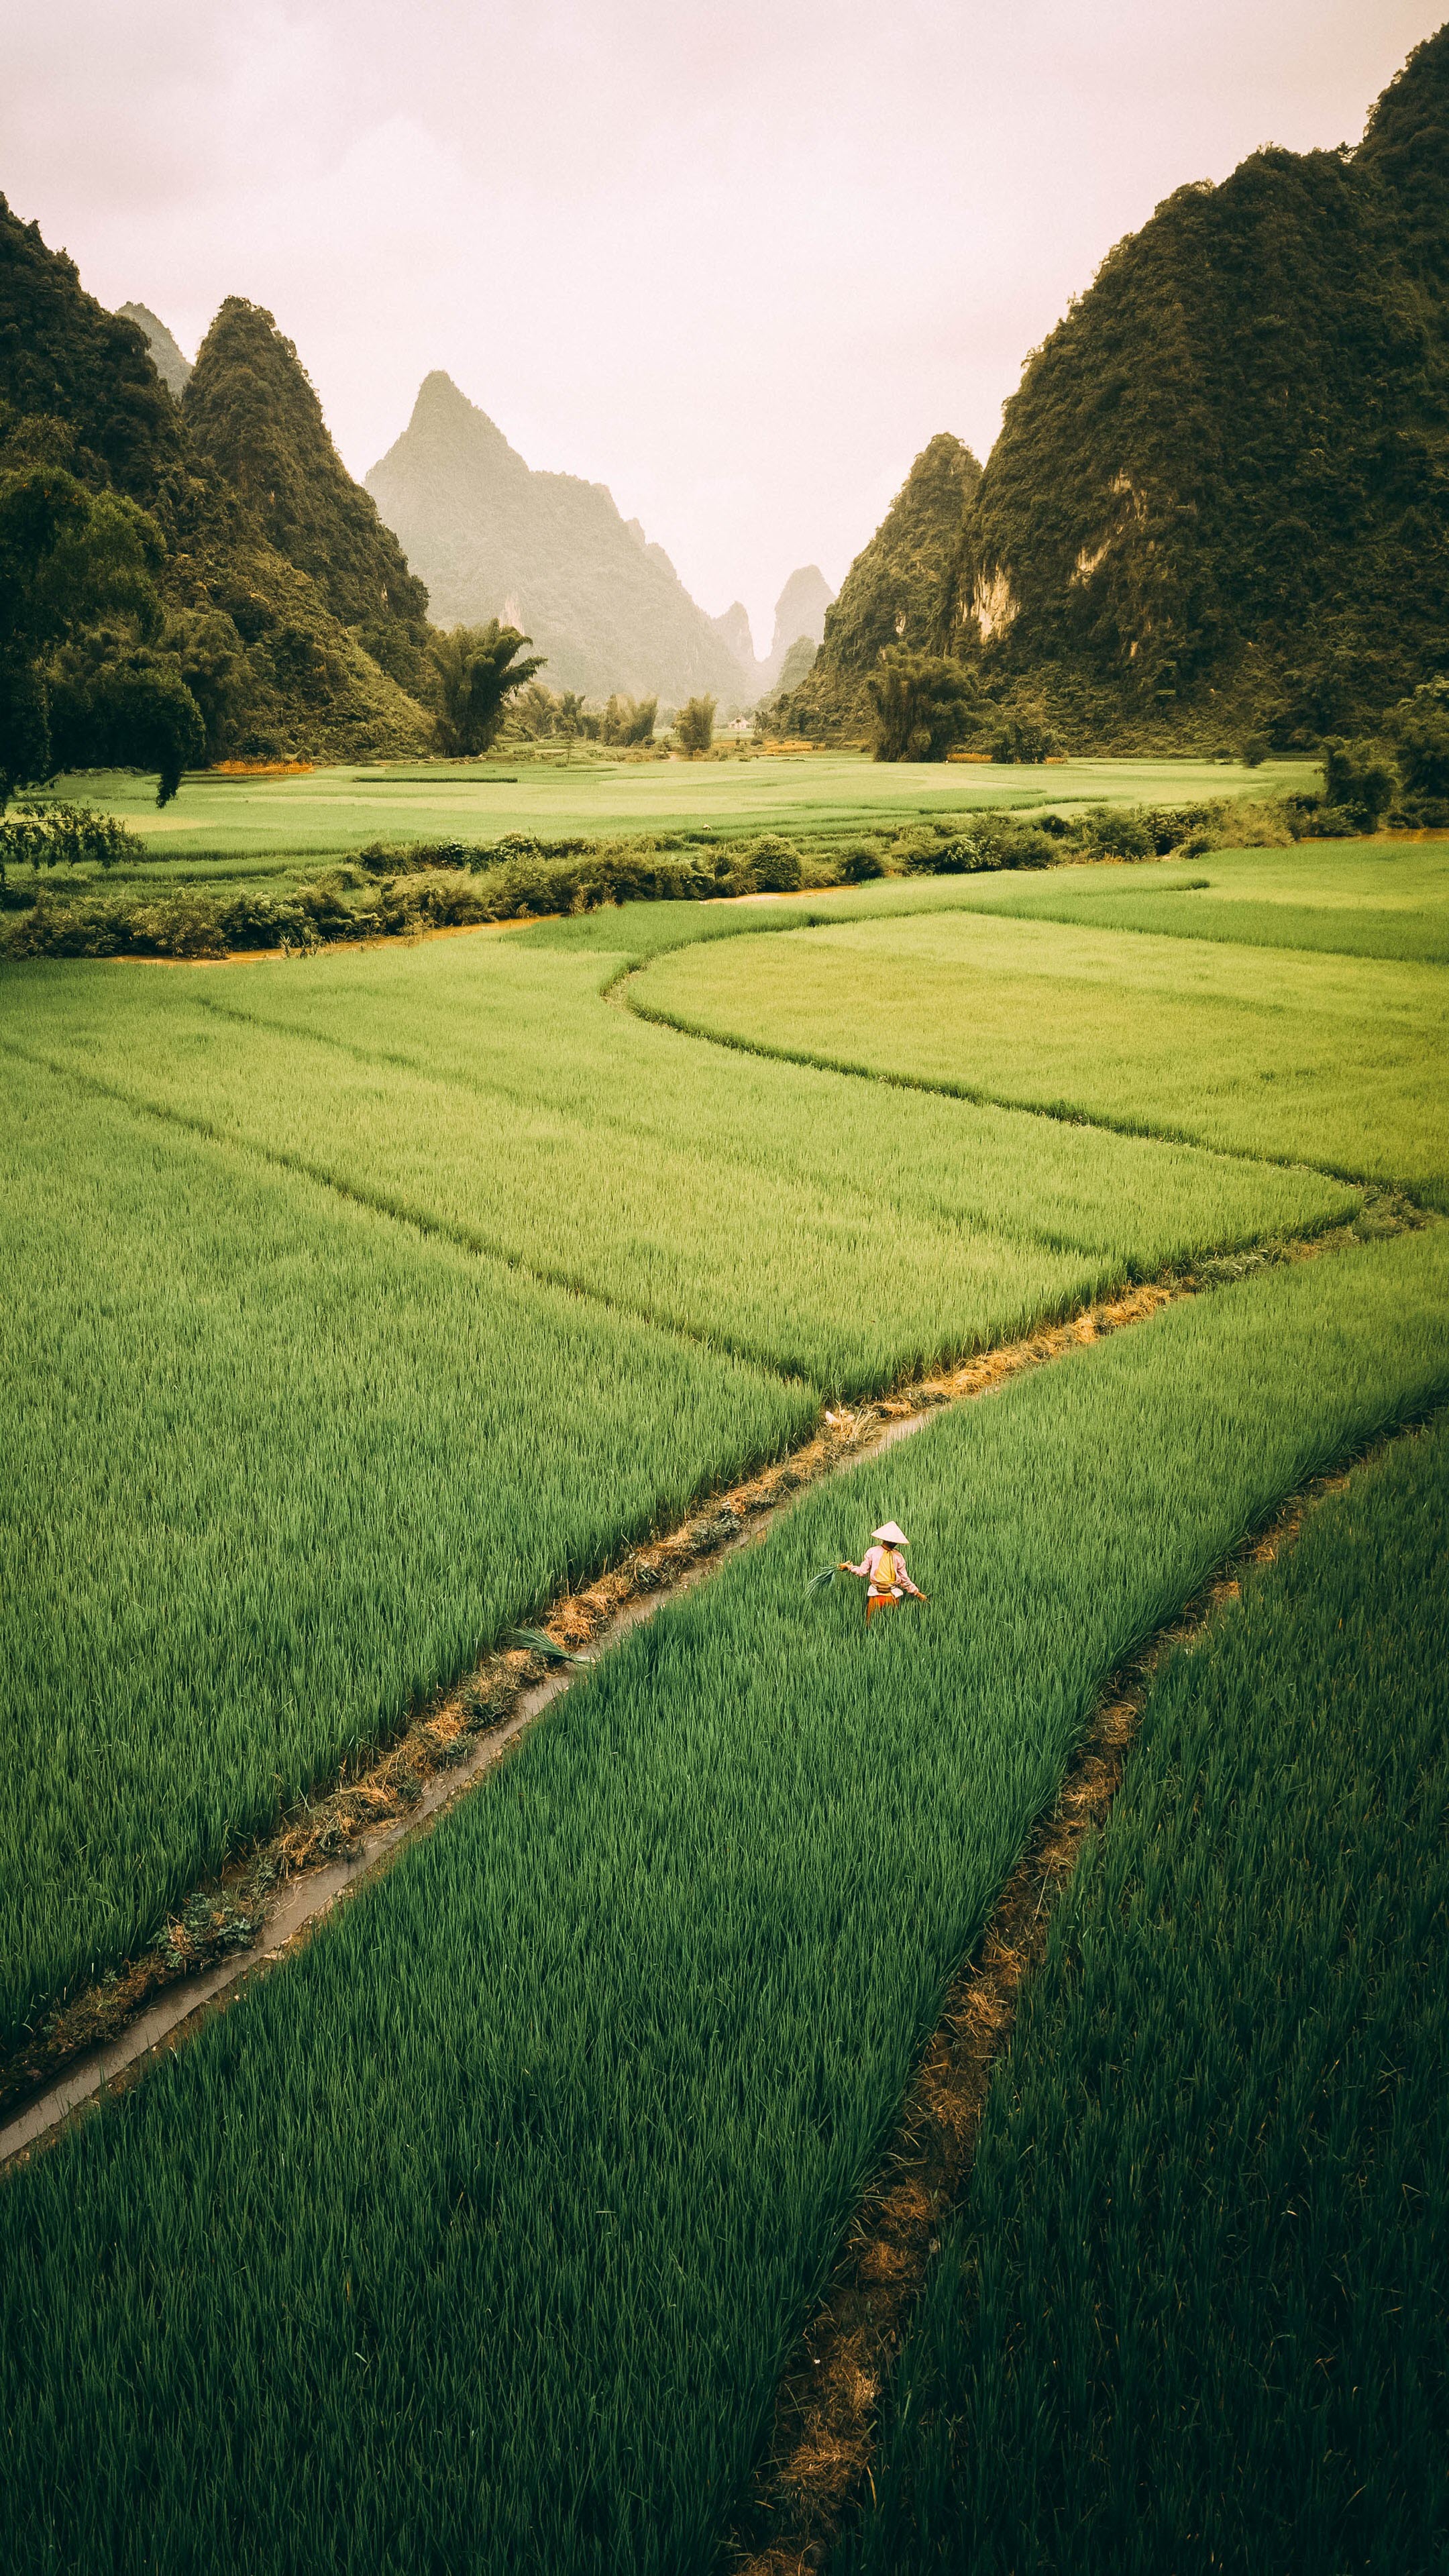 Hình nền Việt Nam 4K tuyệt đẹp  Ảnh đẹp quê hương